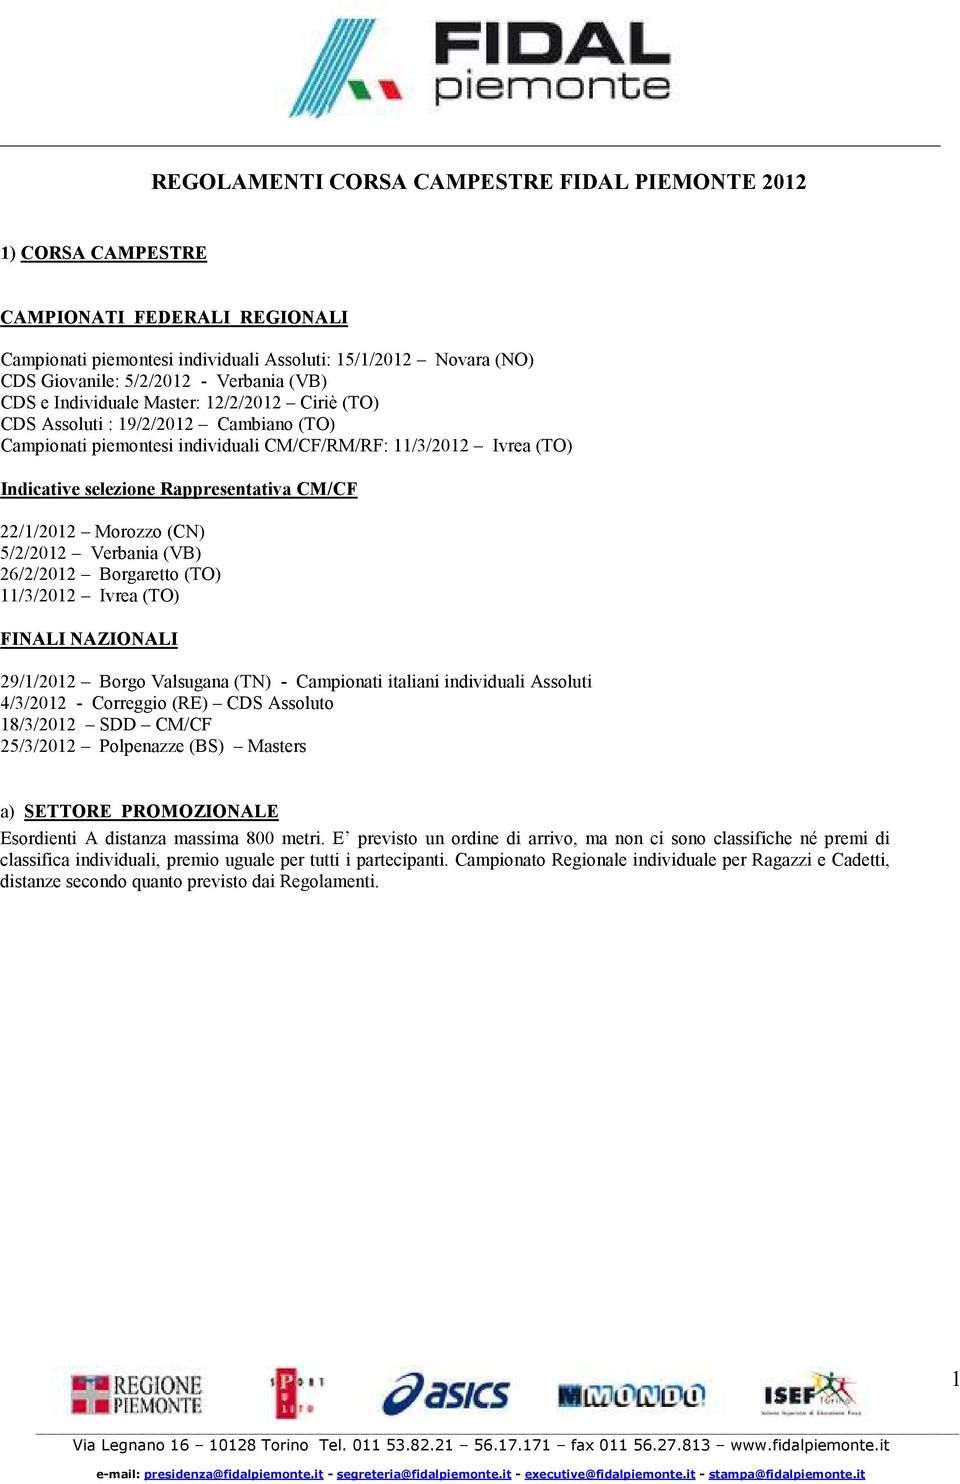 CM/CF 22/1/2012 Morozzo (CN) 5/2/2012 Verbania (VB) 26/2/2012 Borgaretto (TO) 11/3/2012 Ivrea (TO) FINALI NAZIONALI 29/1/2012 Borgo Valsugana (TN) - Campionati italiani individuali Assoluti 4/3/2012